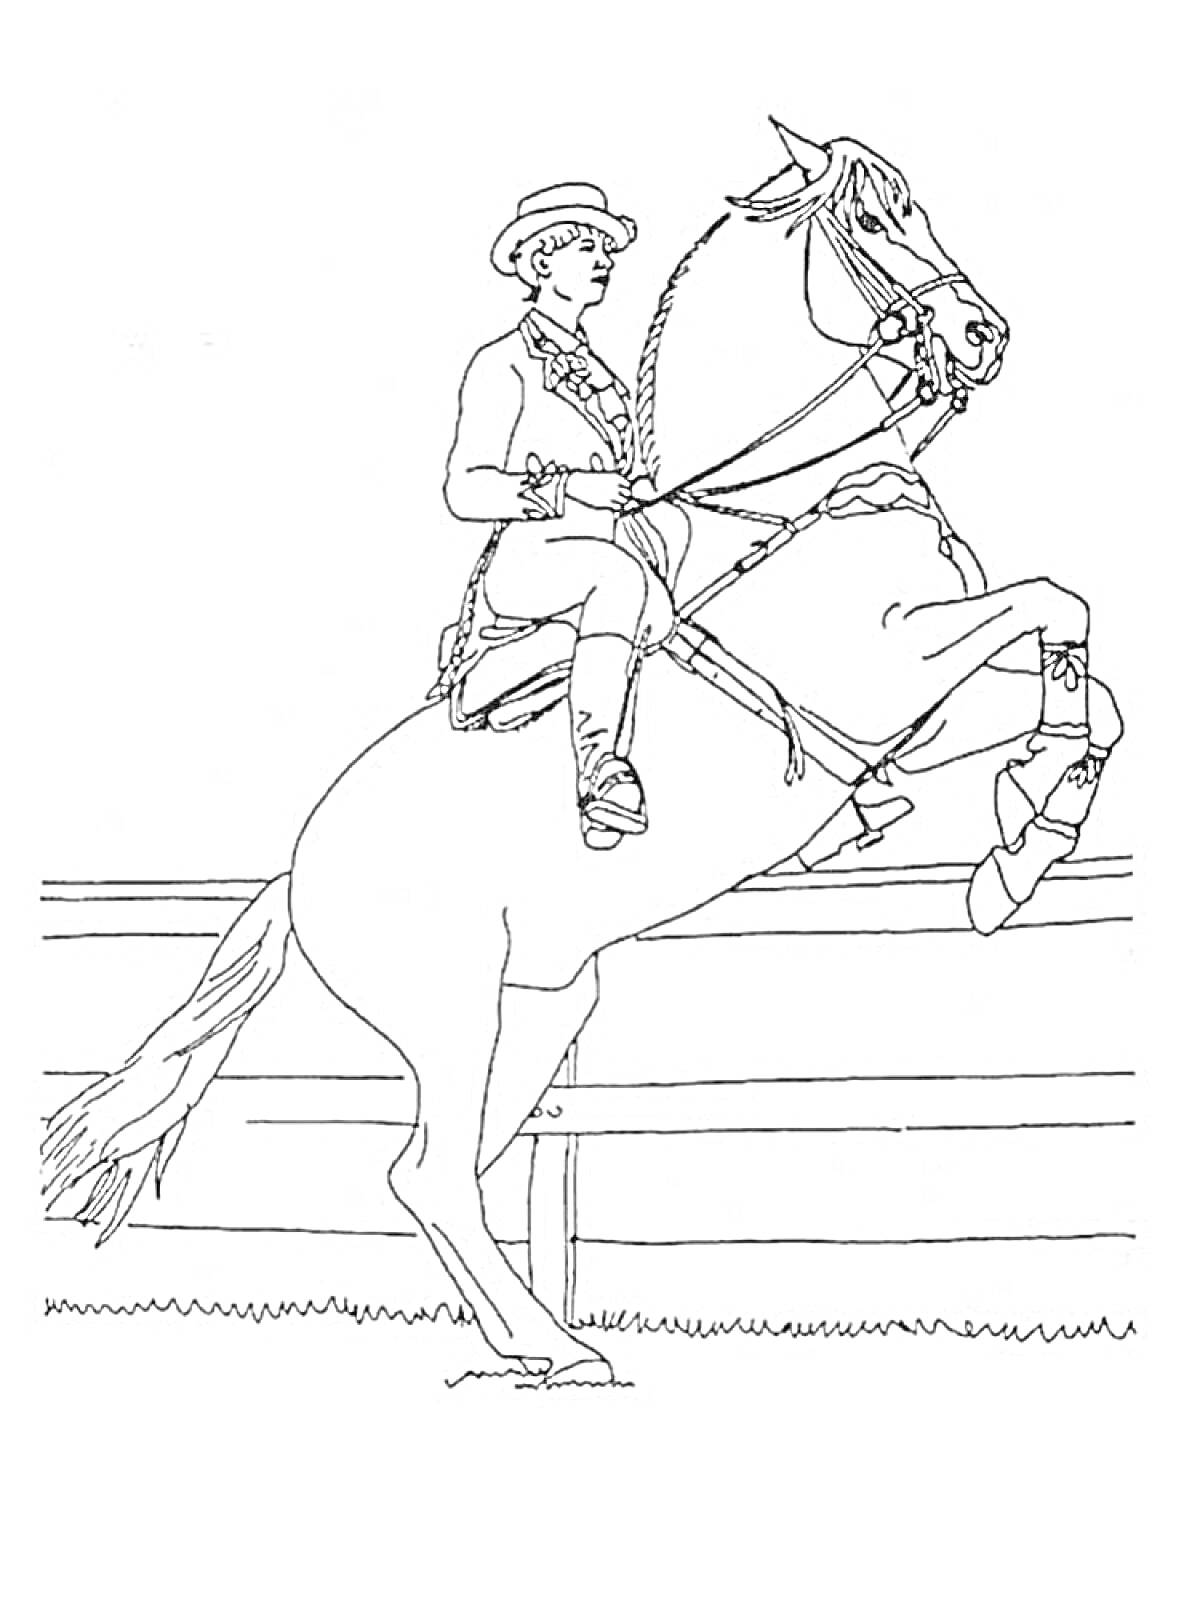 Раскраска Всадник на лошади, поднимающейся на задние ноги, на фоне ограды